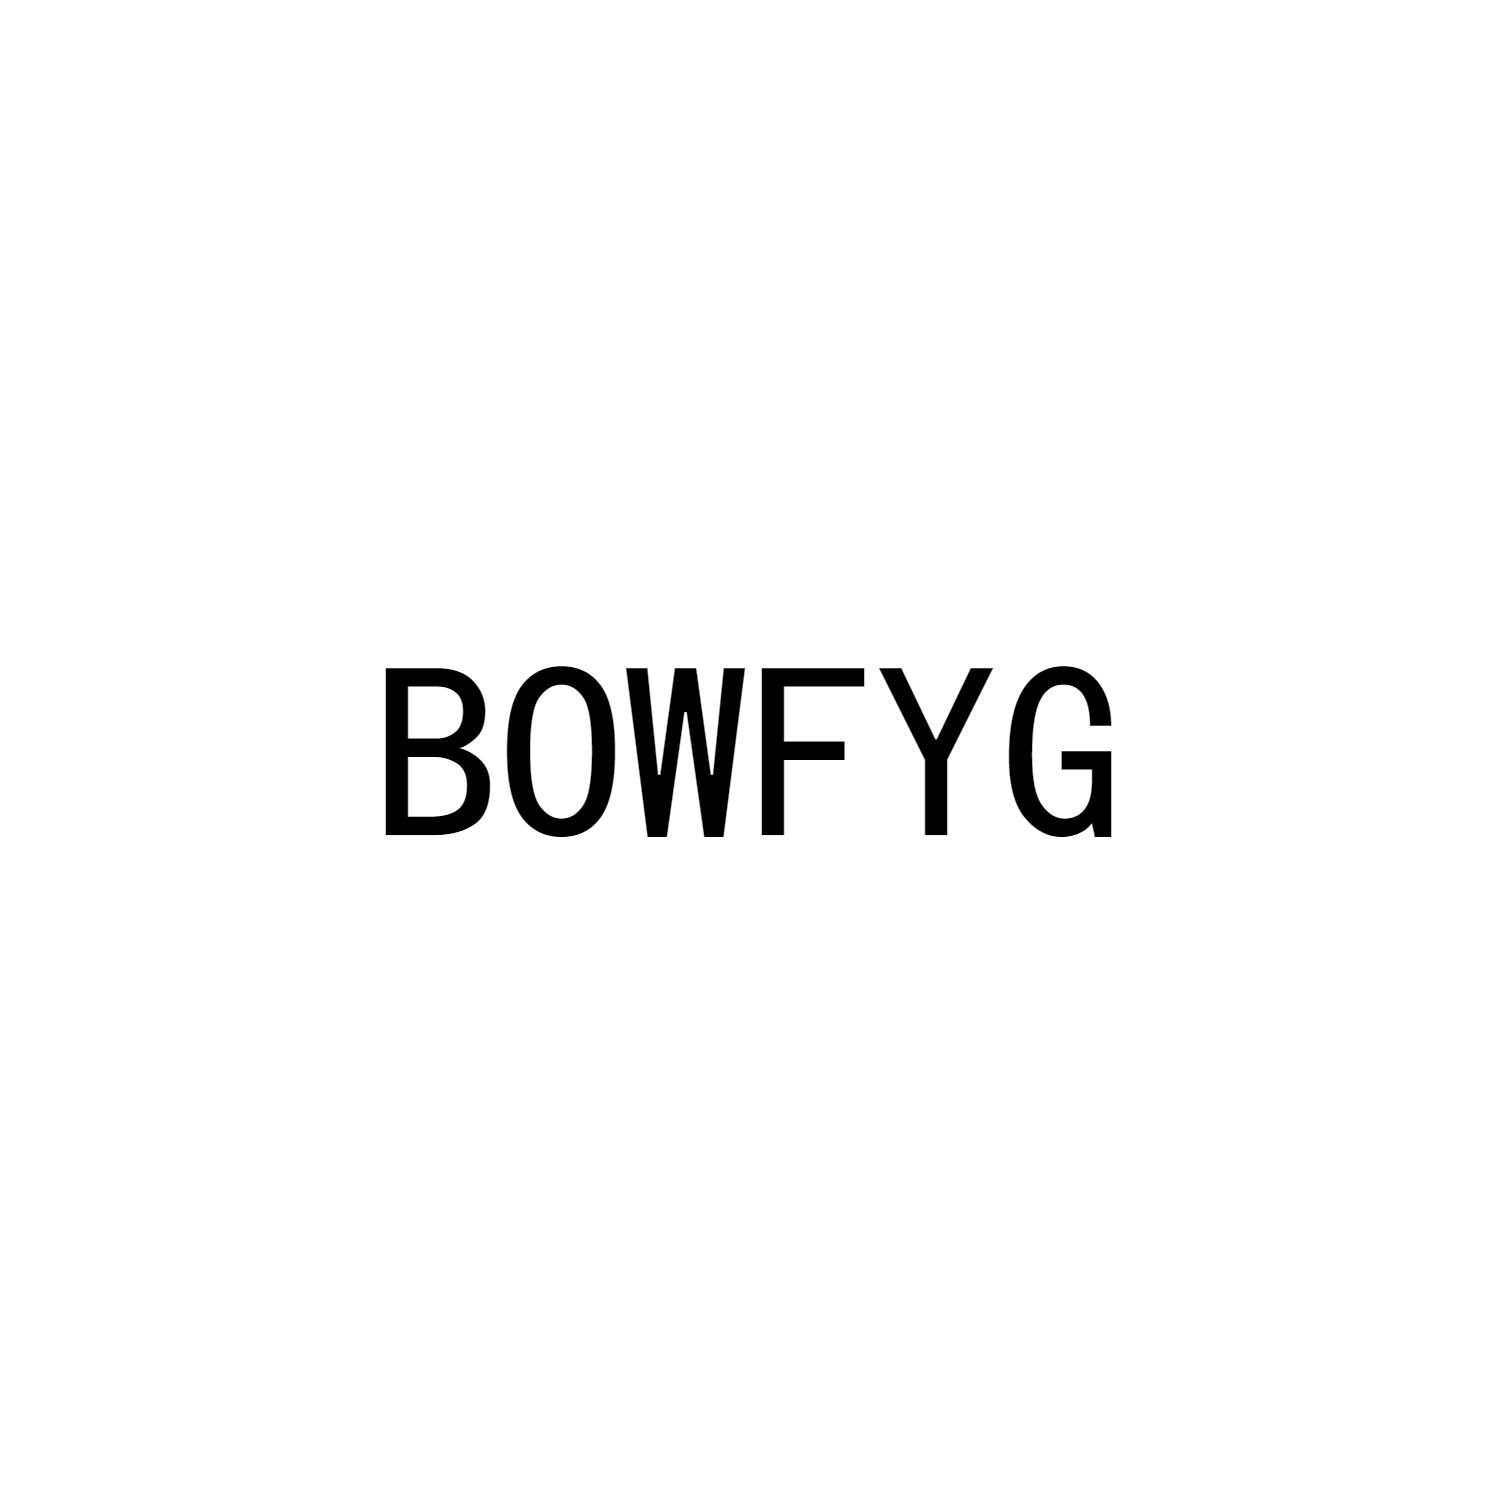 BOWFYG